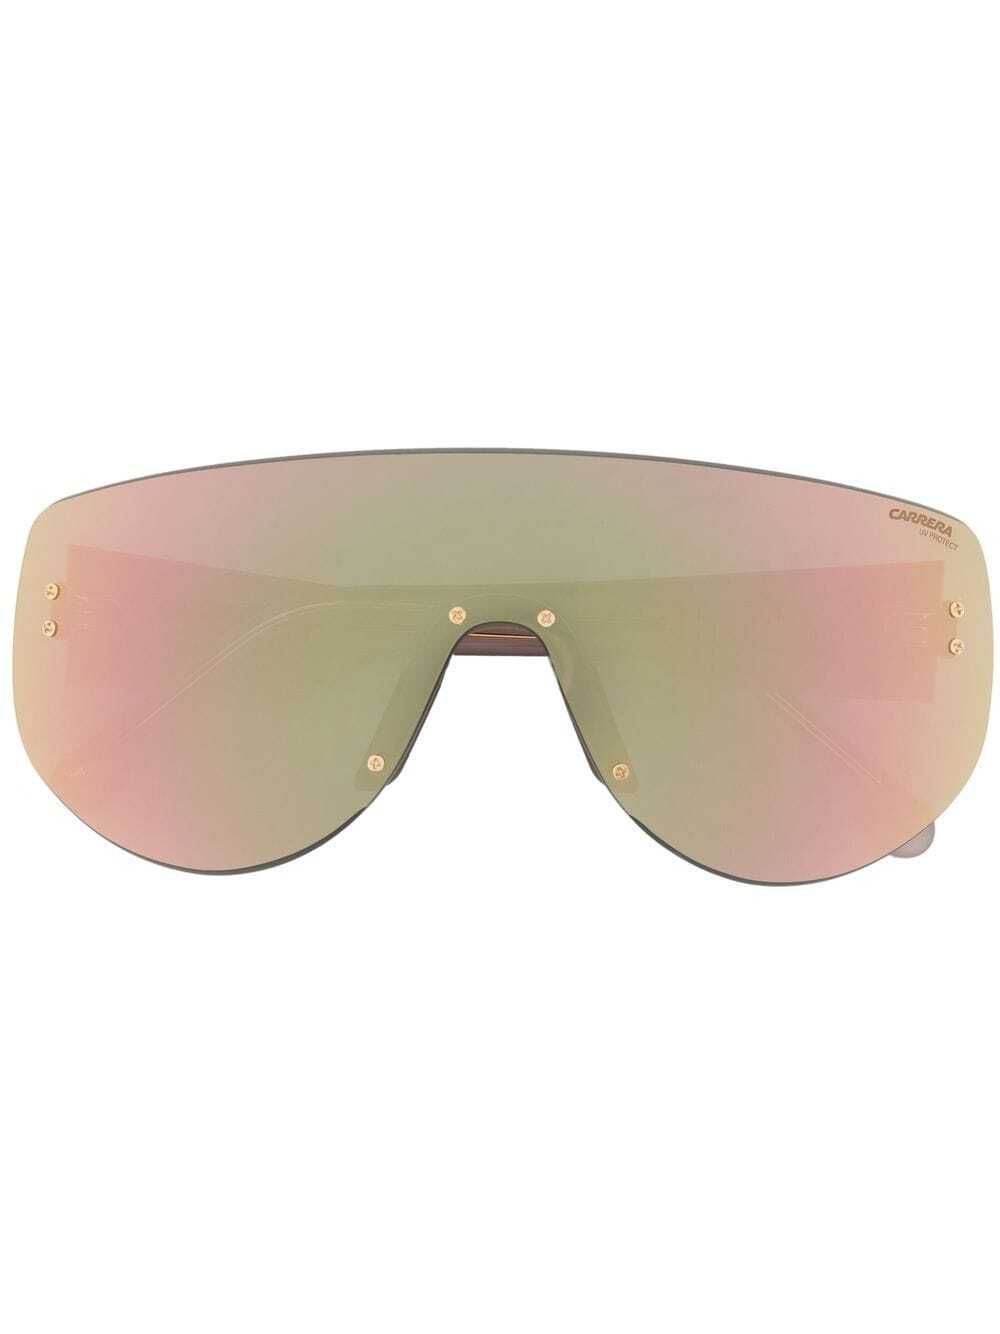 Carrera mirrored sunglasses - Pink